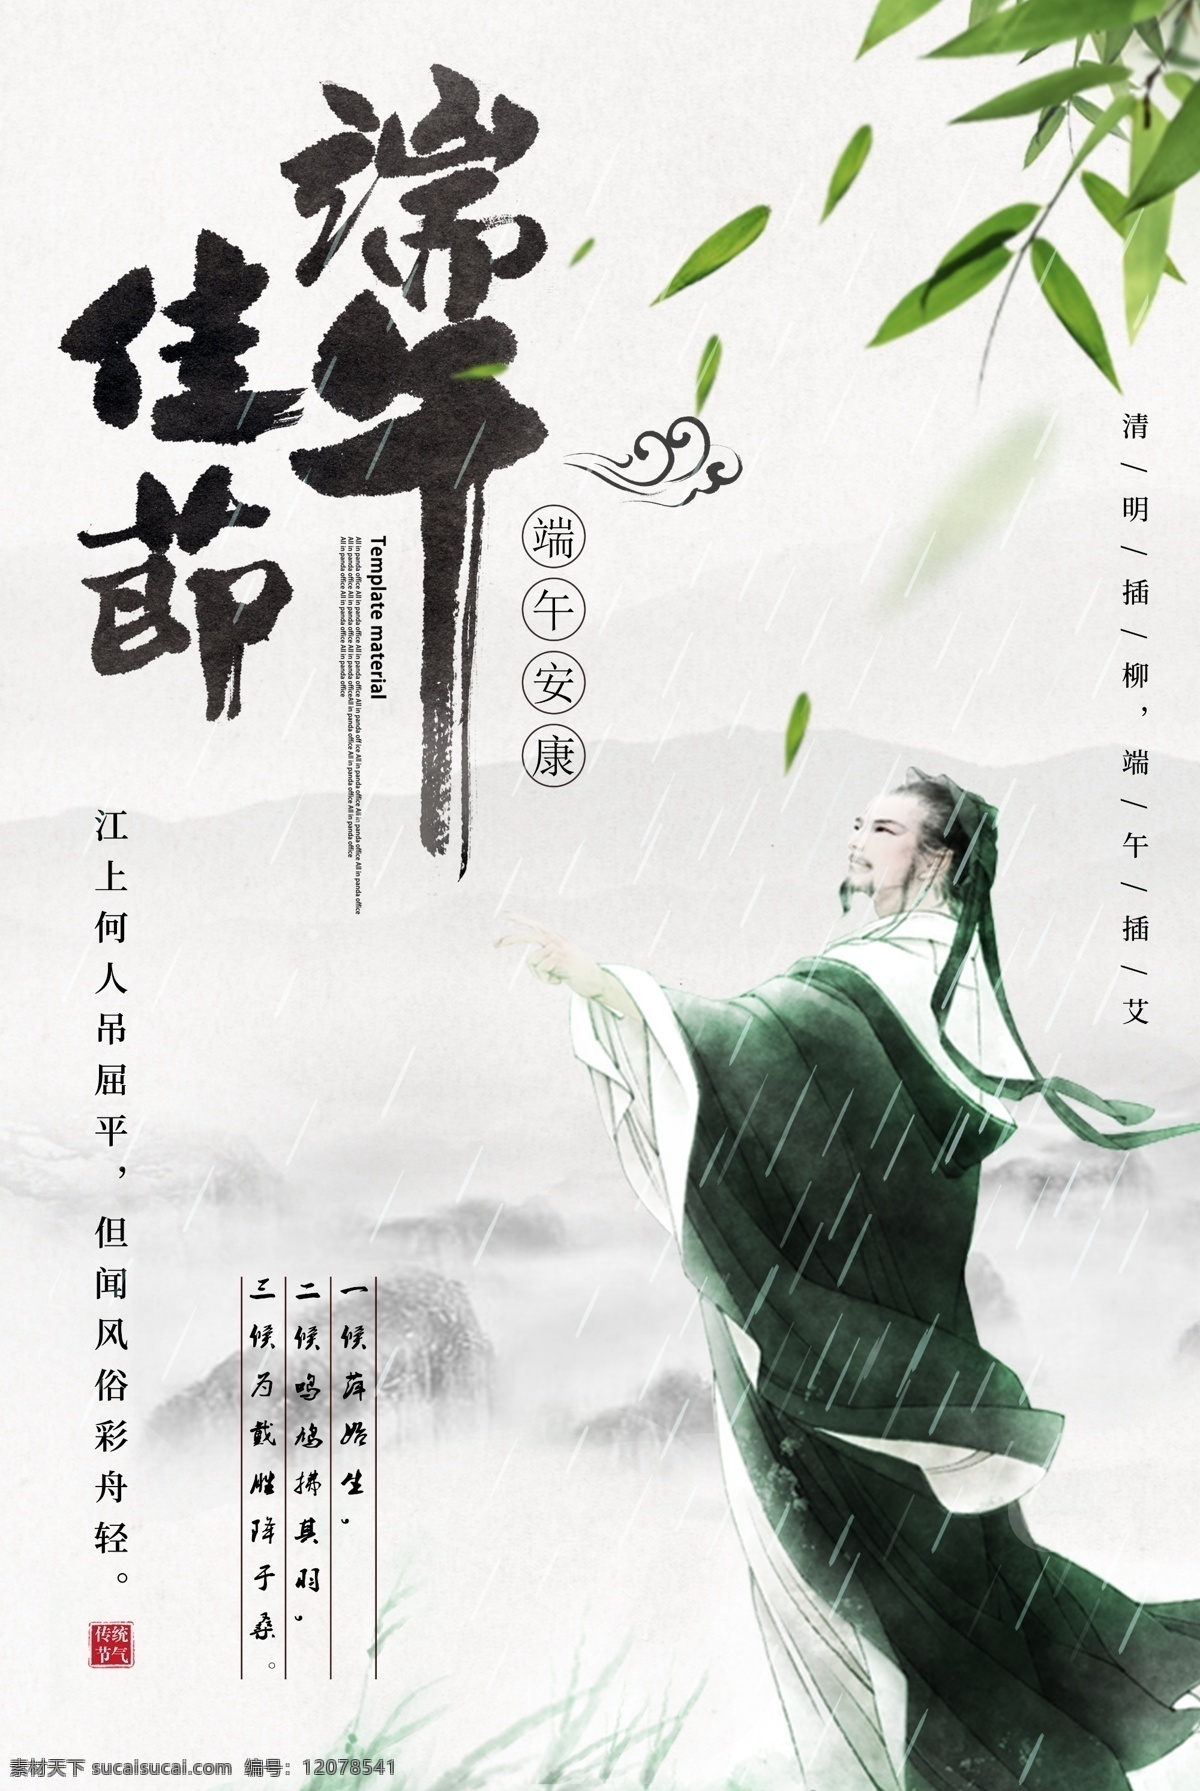 创意 水墨 中国 风 端午节 海报 中国风